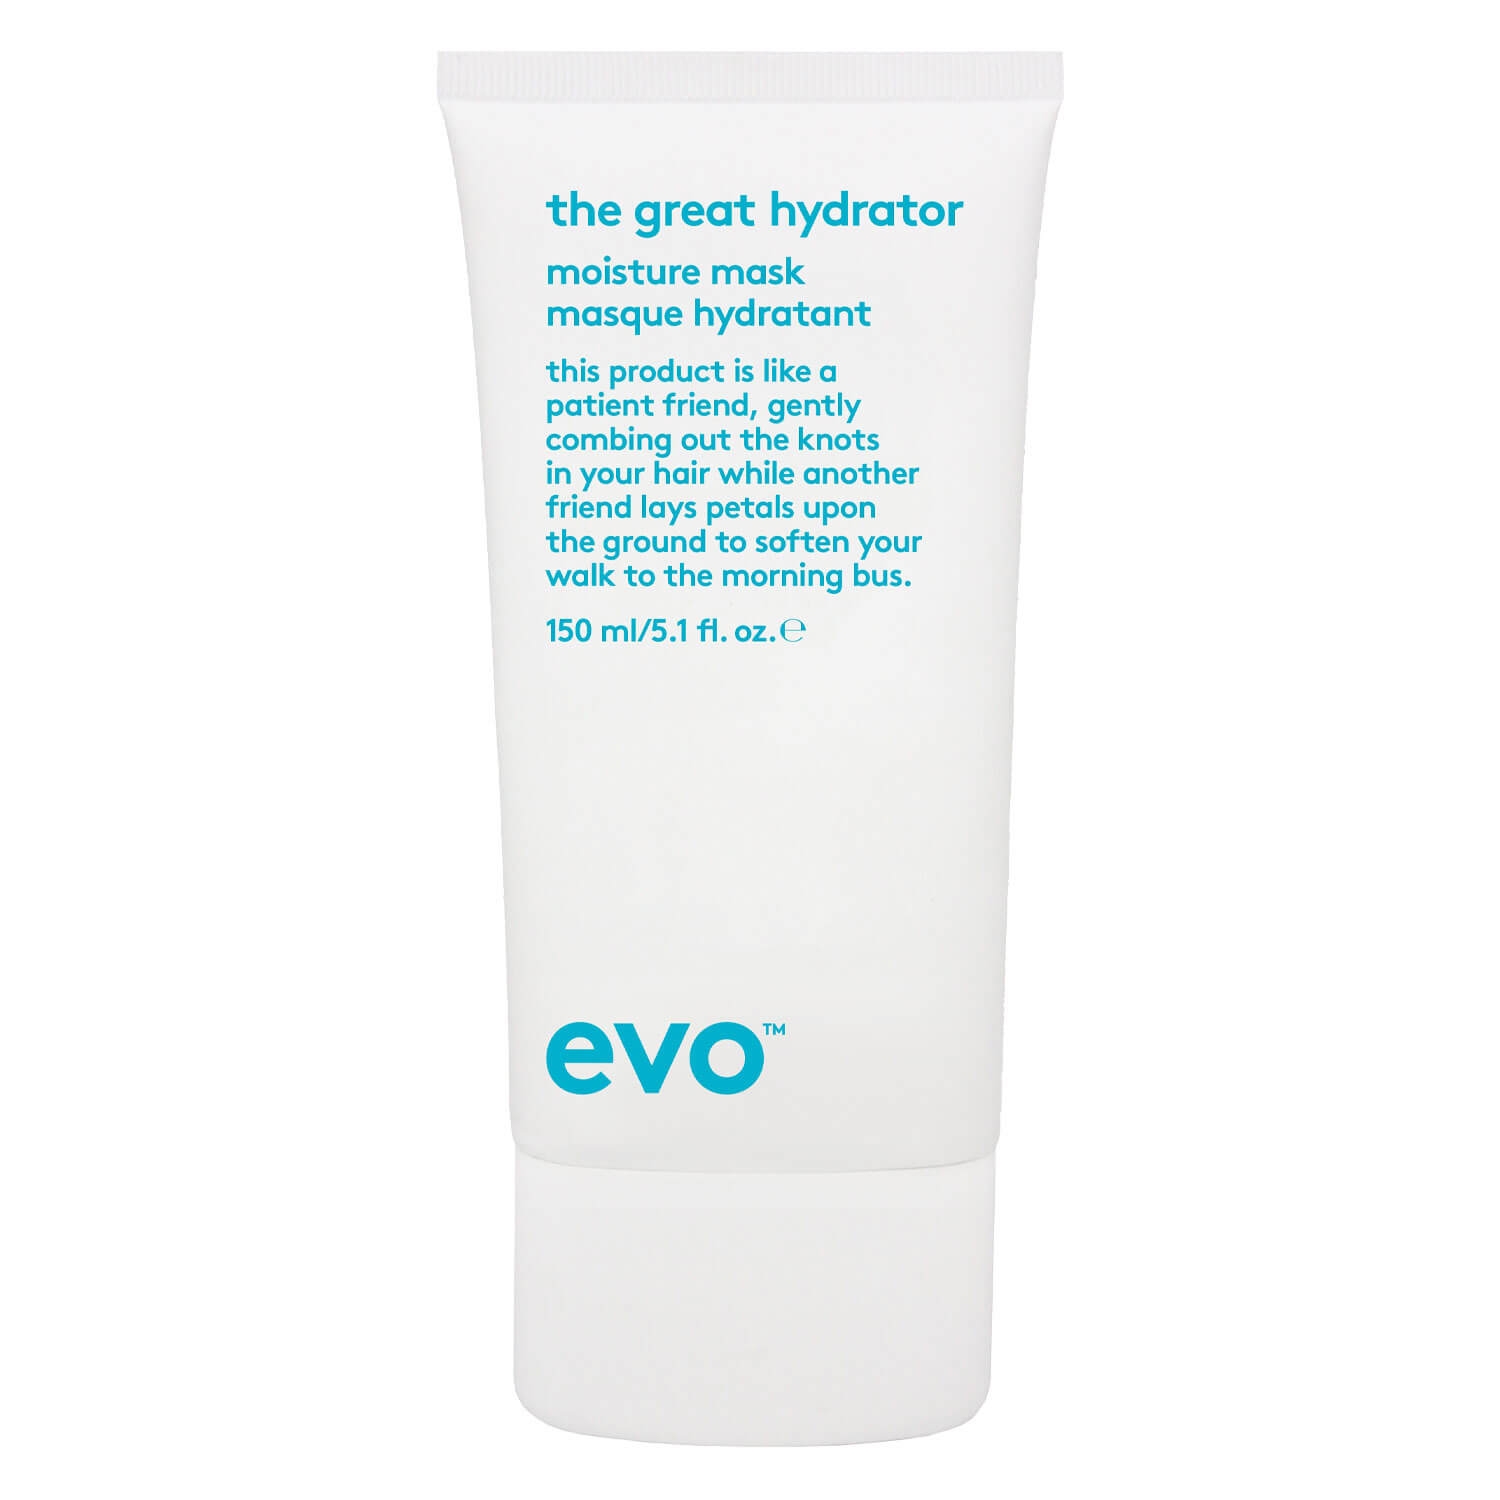 Produktbild von evo calm - the great hydrator moisture mask